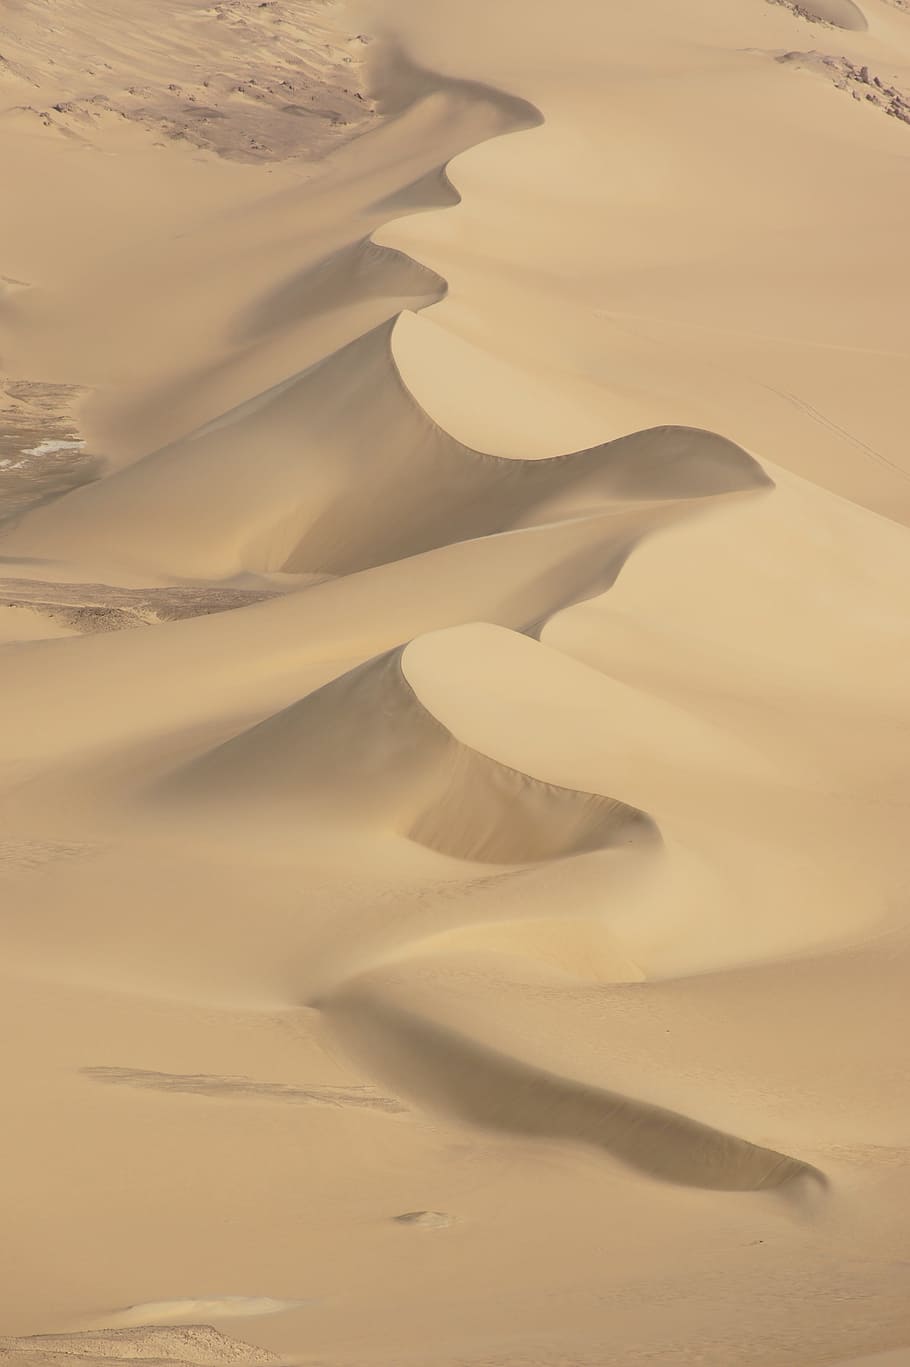 Desert, Egypt, Sand, Africa, white desert, sahara, sand Dune